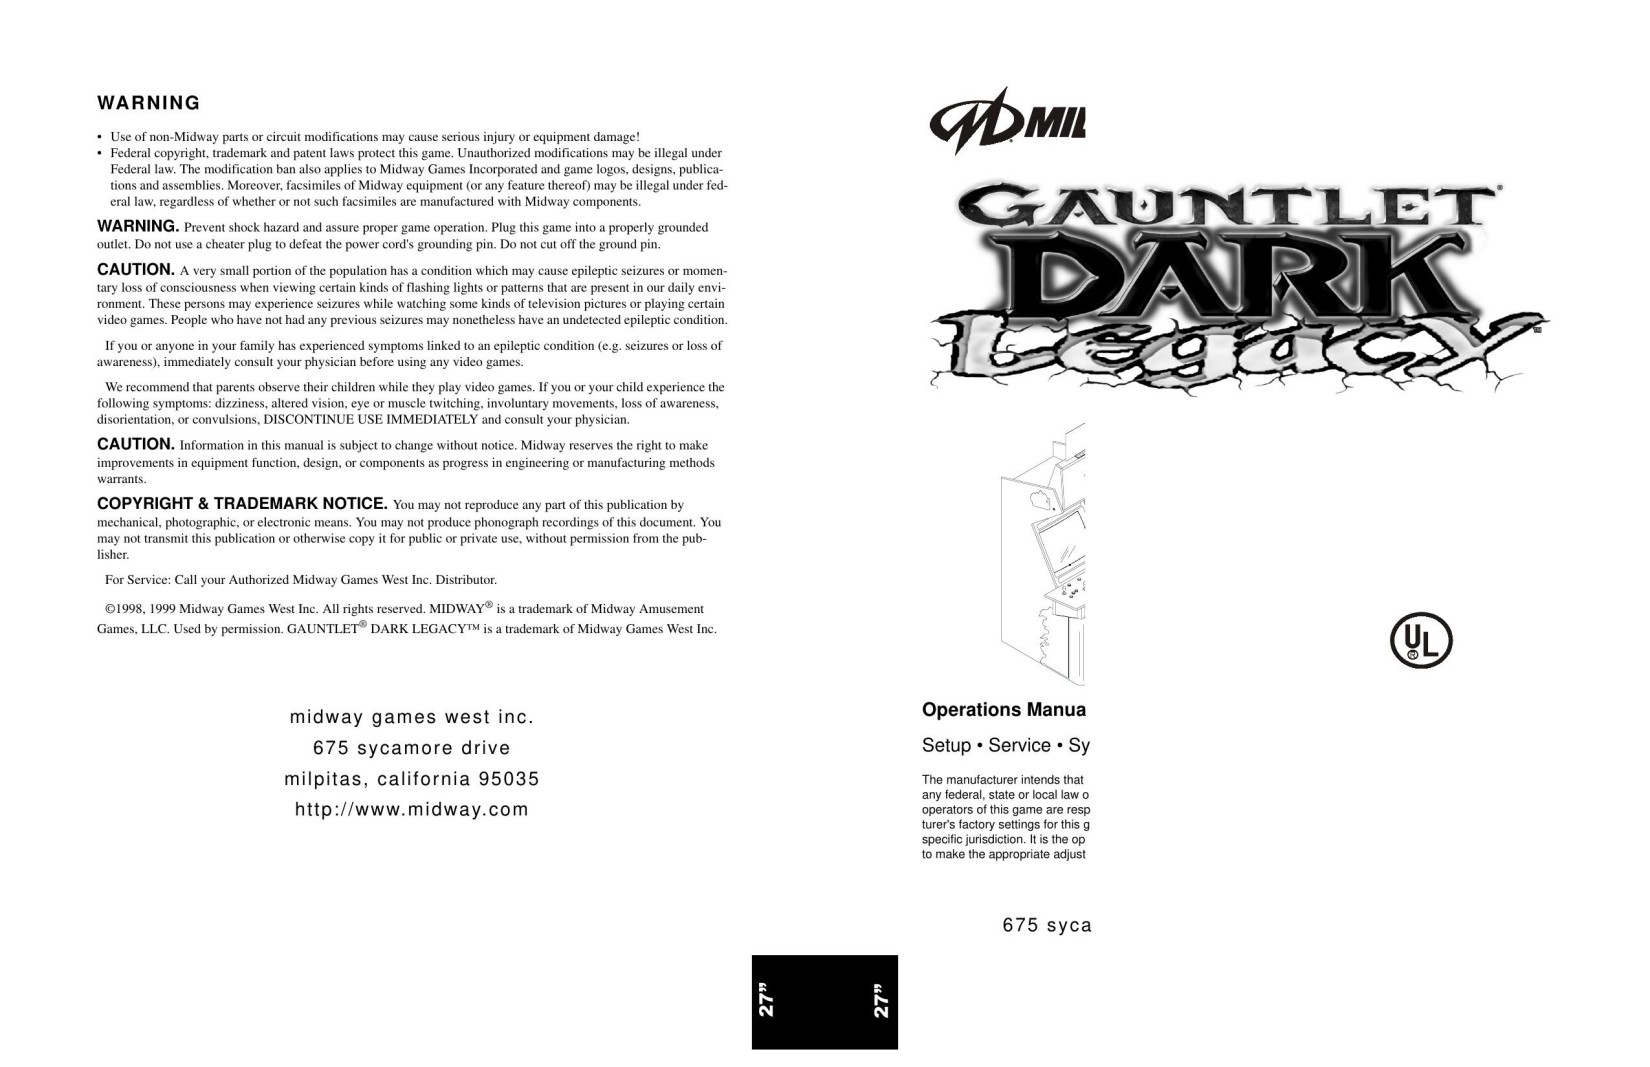 Gauntlet Dark Legacy 27in